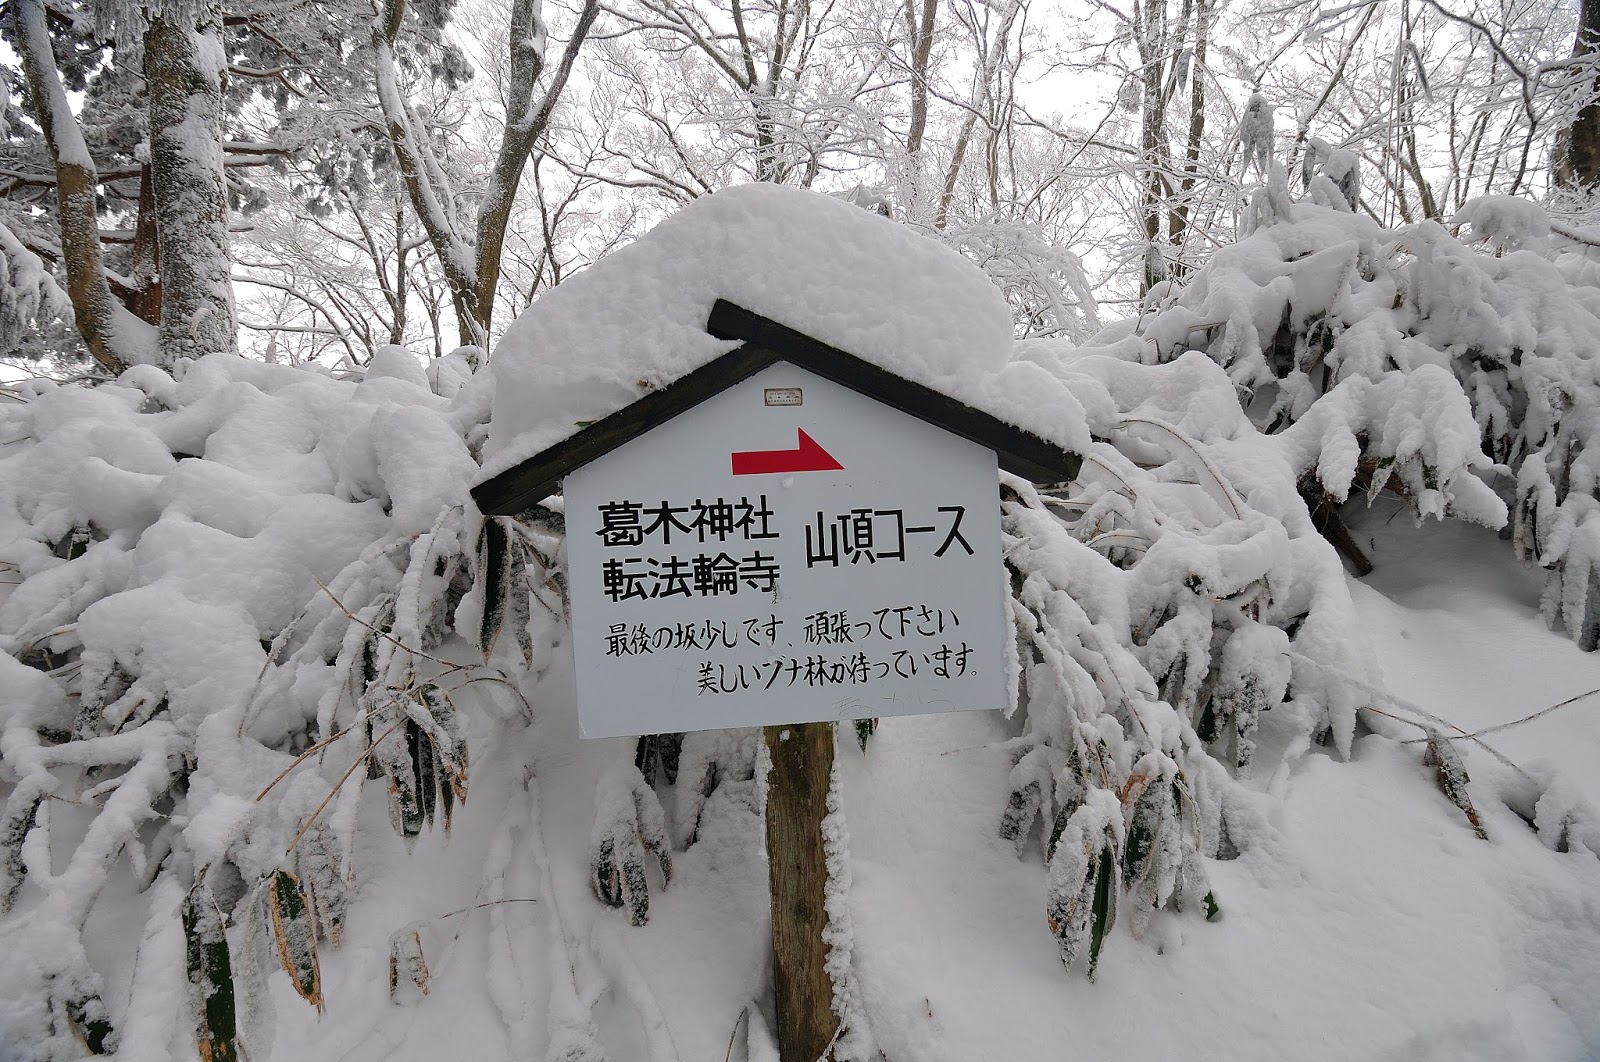 山 積雪 金剛 大阪に雪が積もった！ ここは金剛山、雪の絶景がサイコー☆[大阪府千早赤阪村、奈良県御所市]